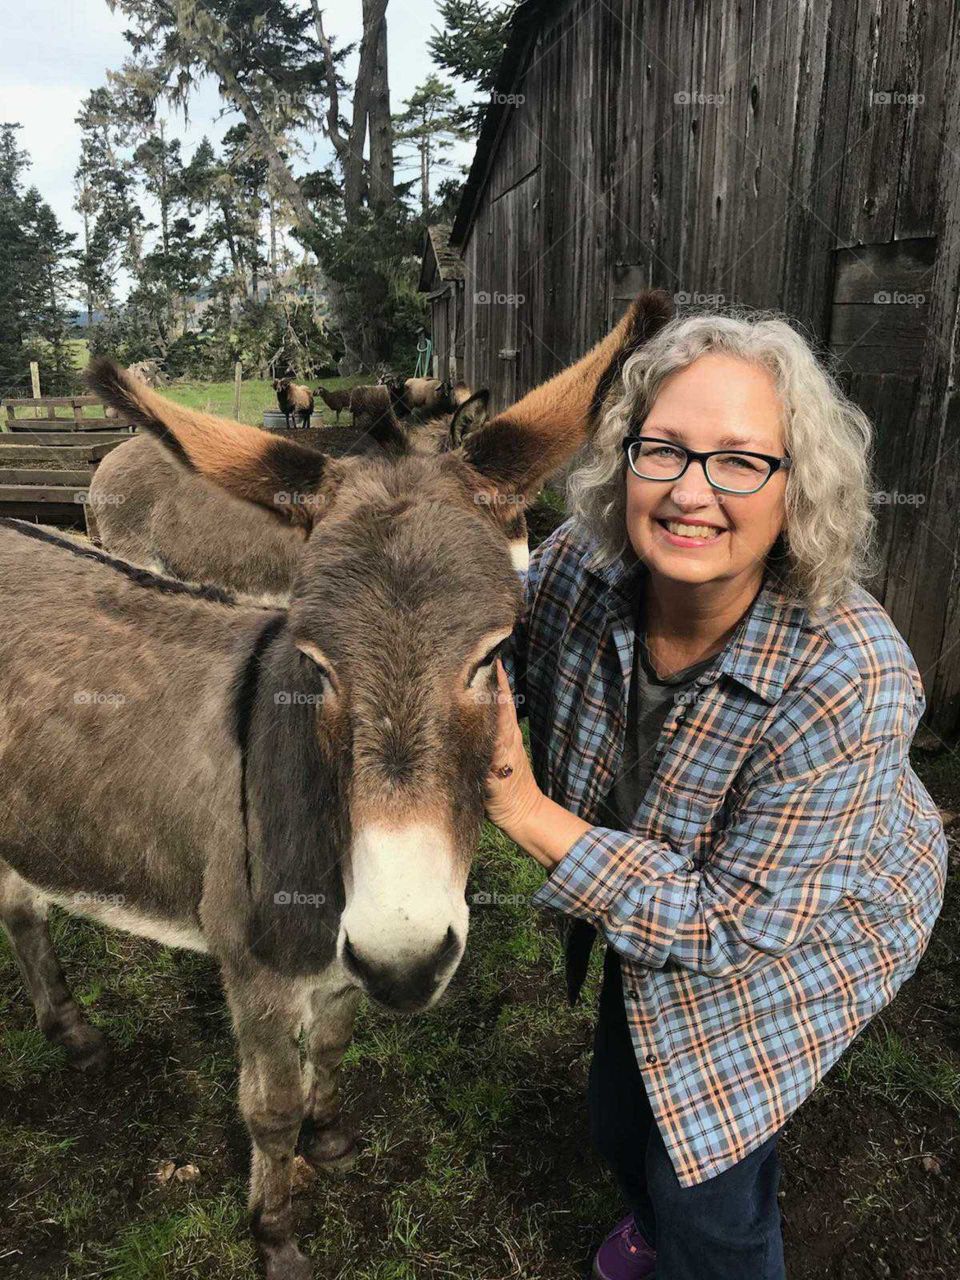 Lady with donkey